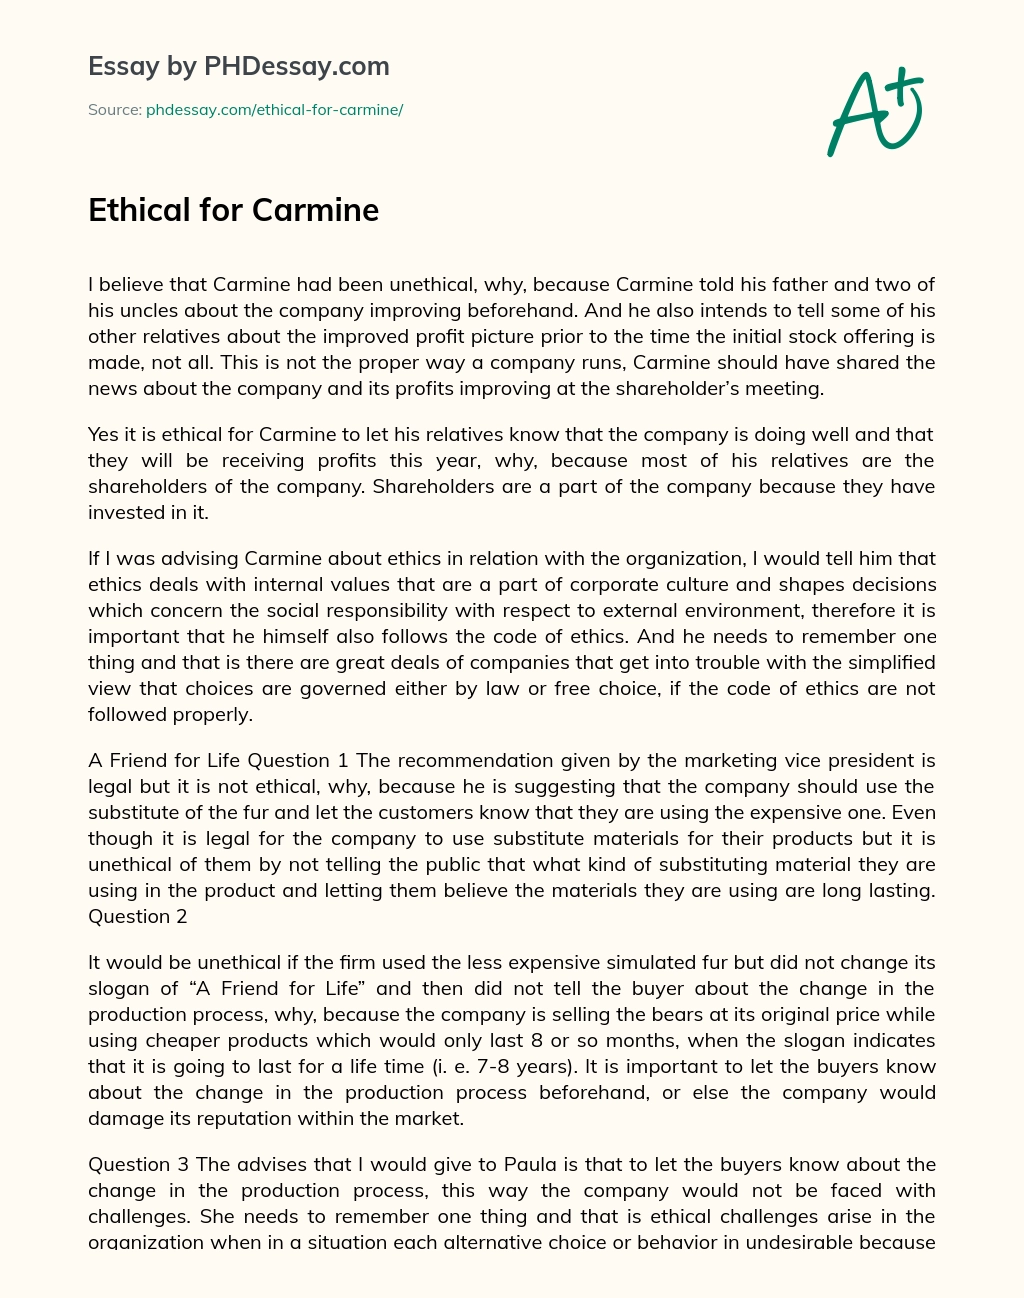 Ethical for Carmine essay